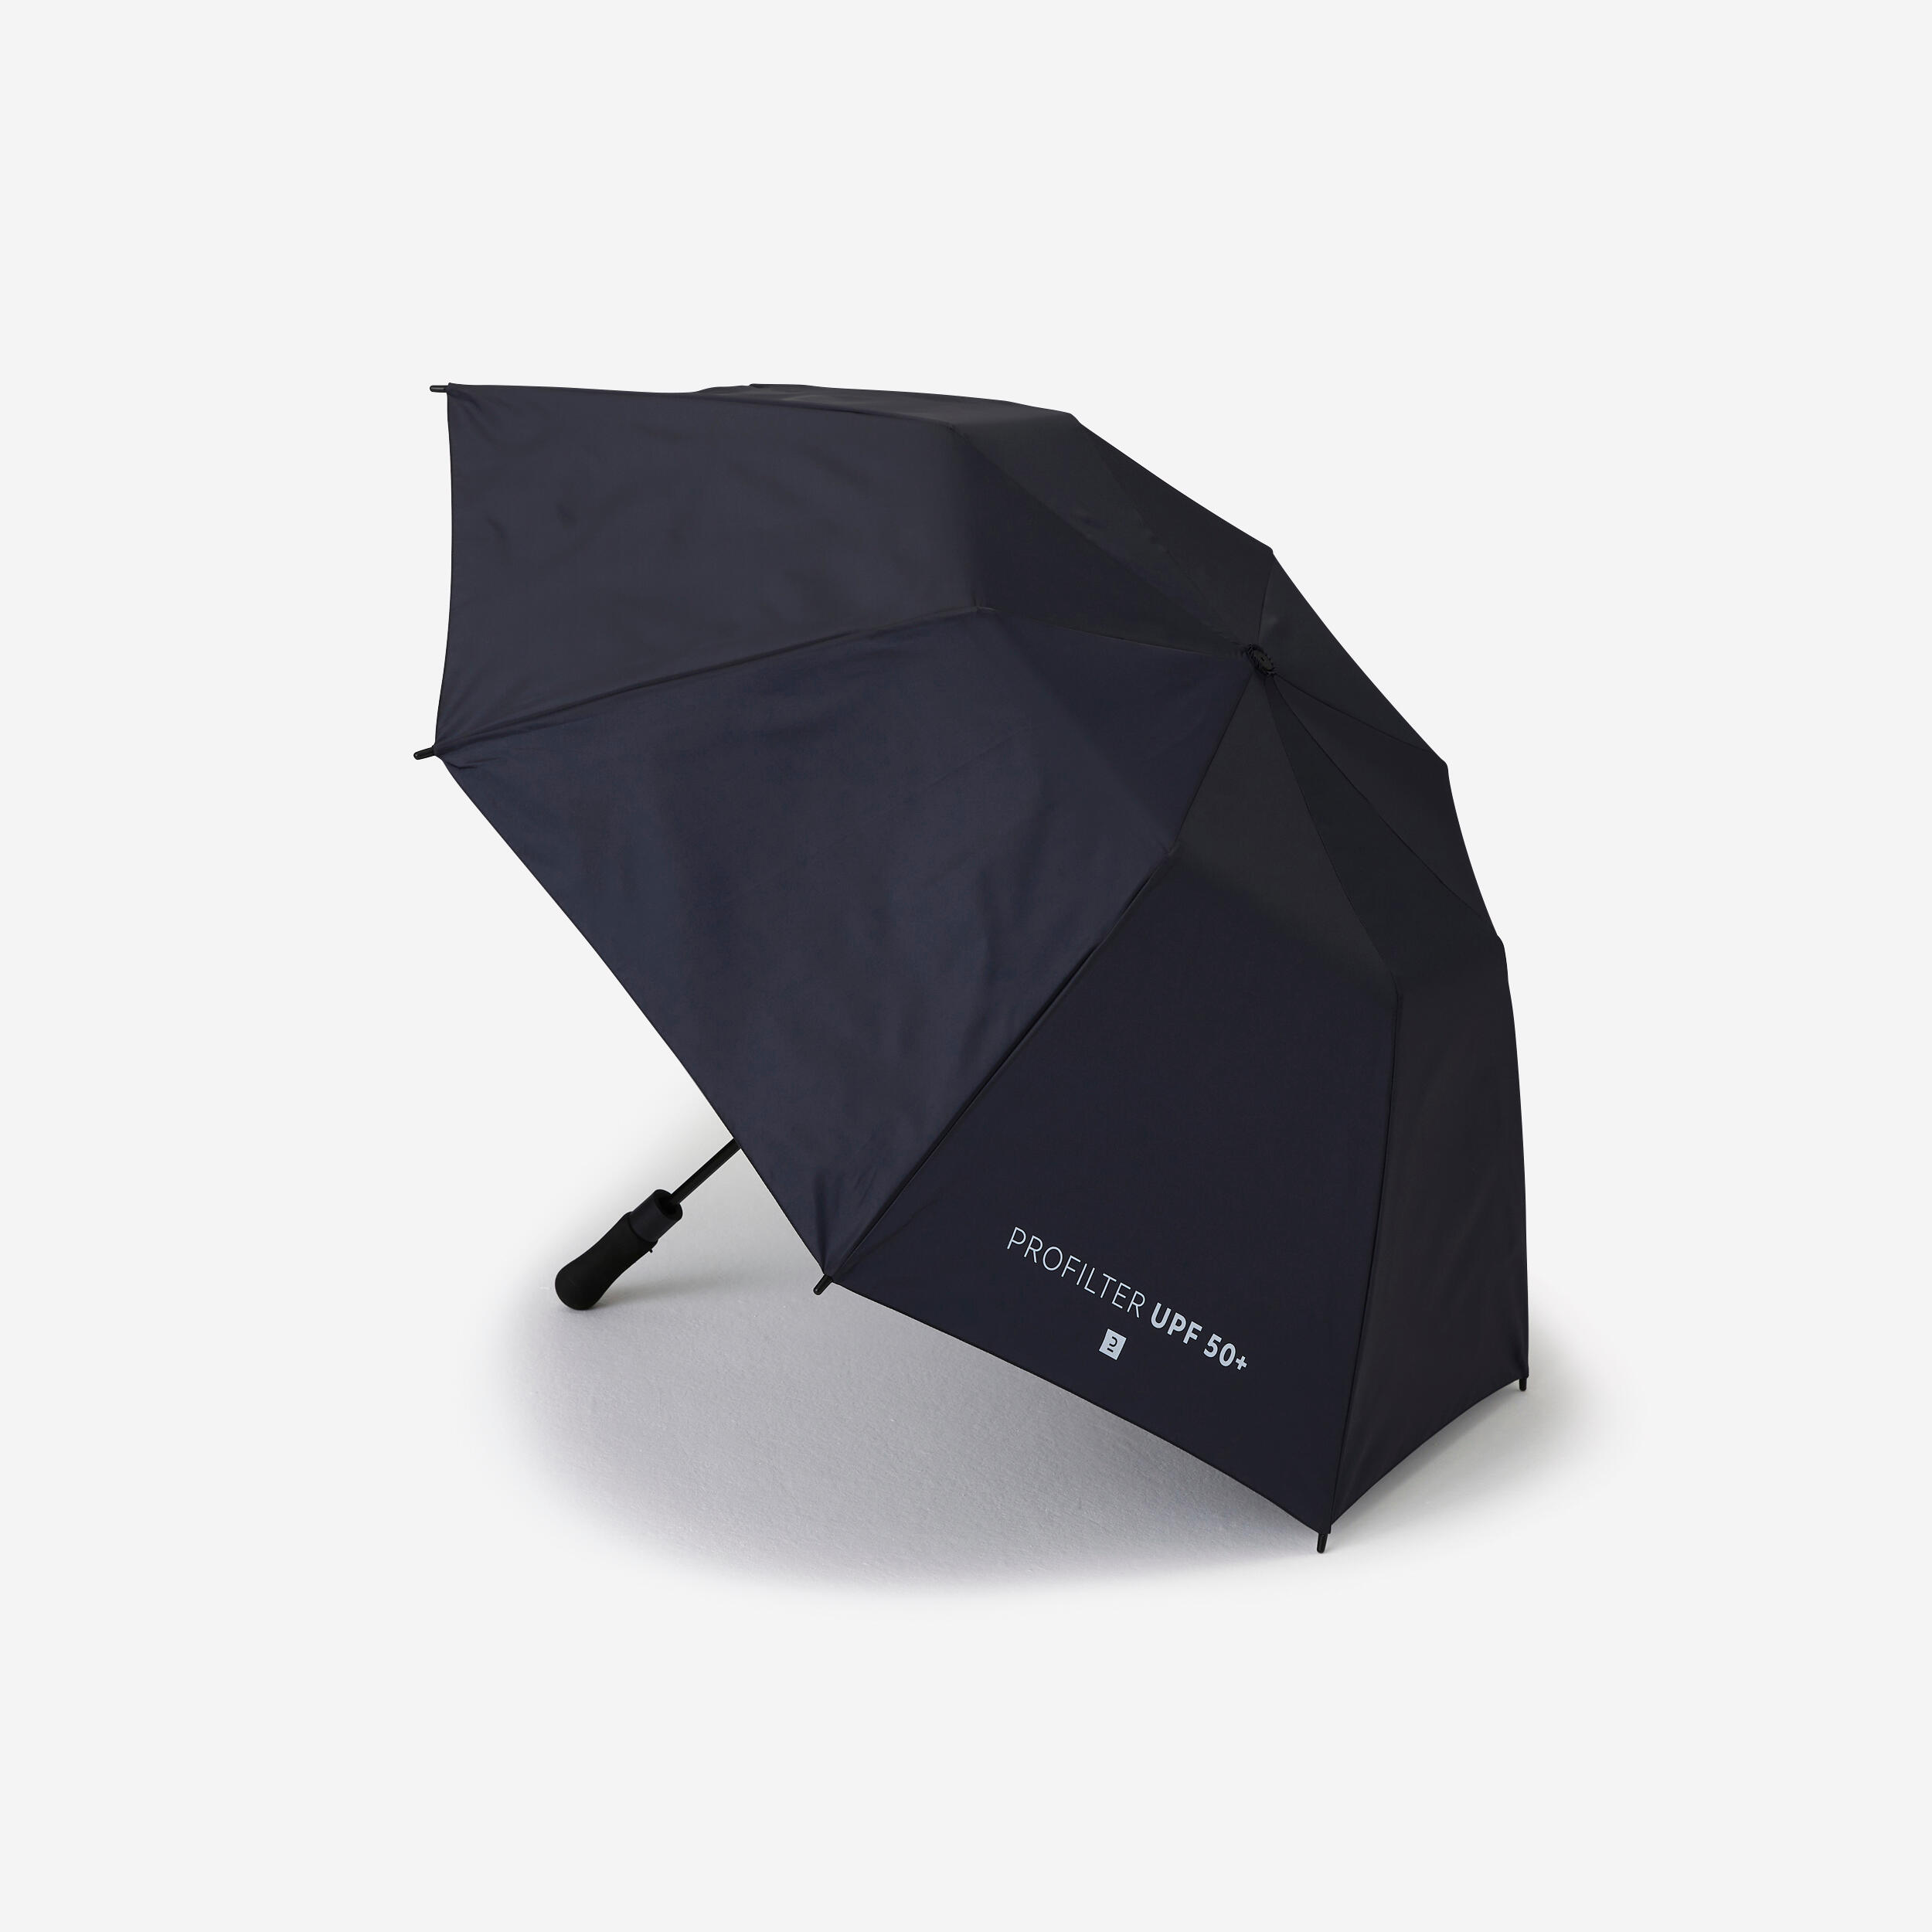 INESIS Golf umbrella medium - INESIS ProFilter dark blue